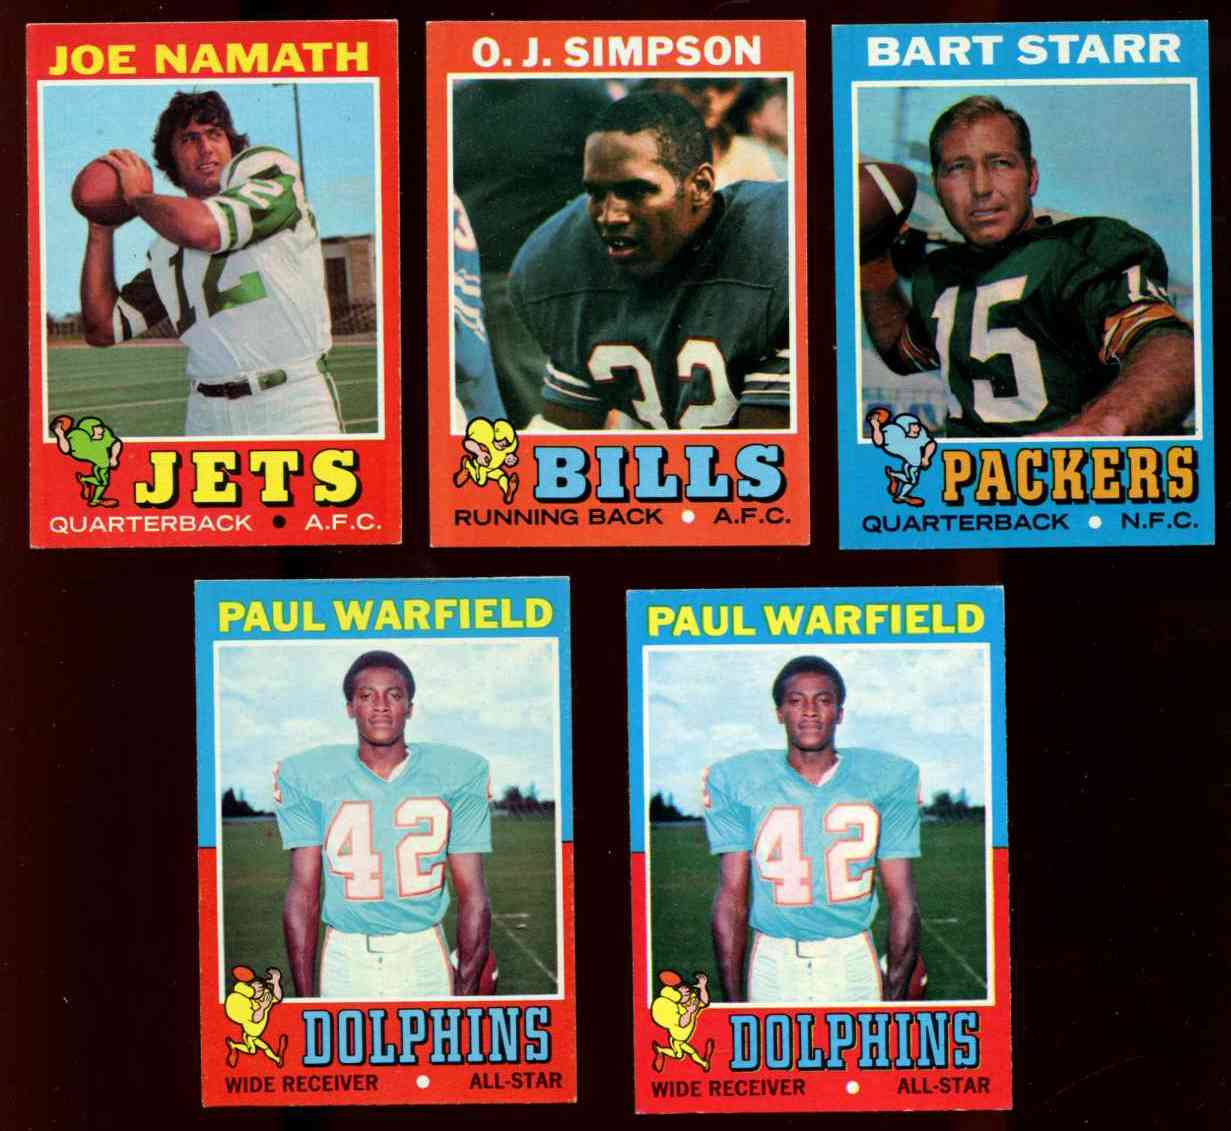 1971 Topps FB #250 Joe Namath (Jets) Football cards value